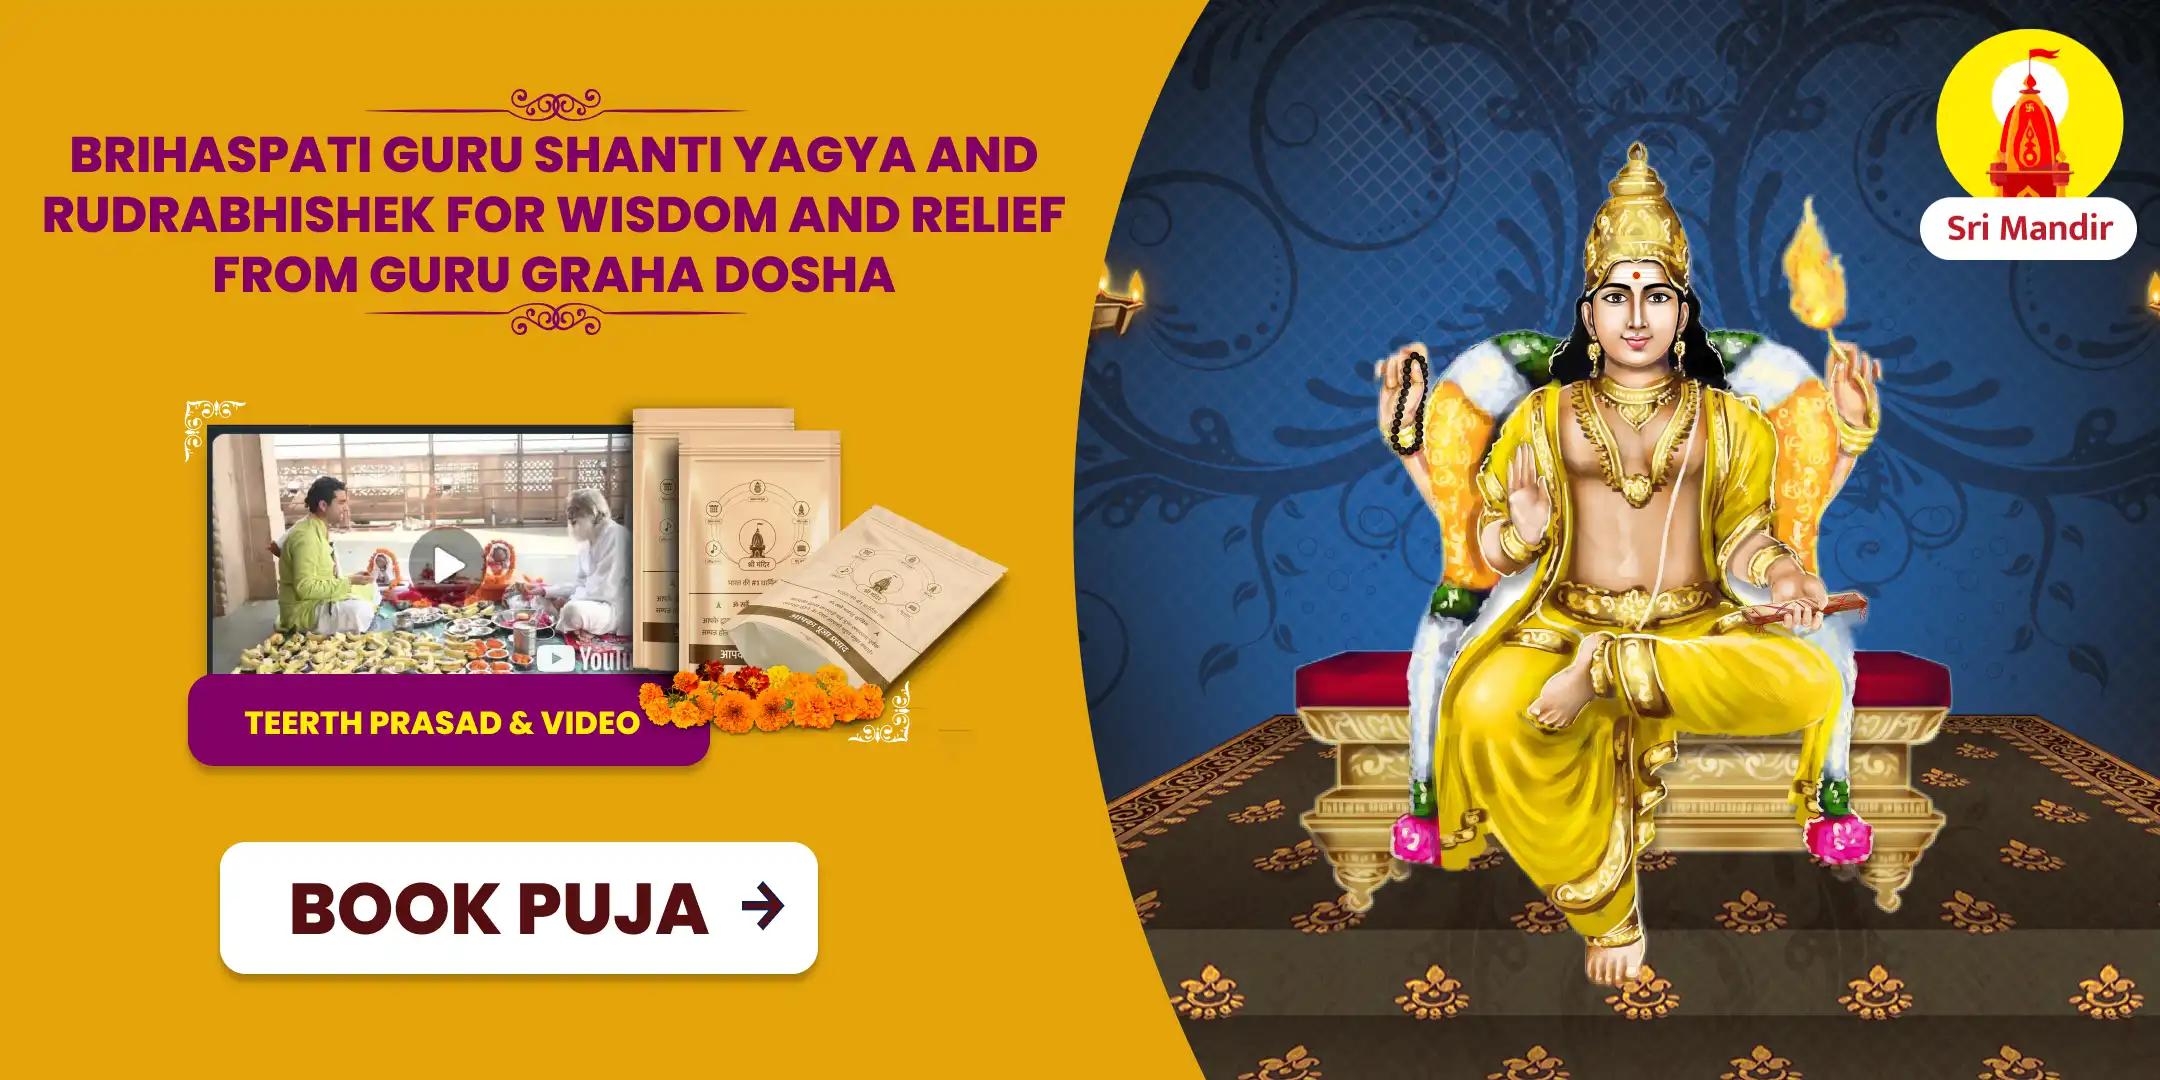 Brihaspati Guru Shanti Yagya and Rudrabhishek for Wisdom and Relief from Guru Graha Dosha 